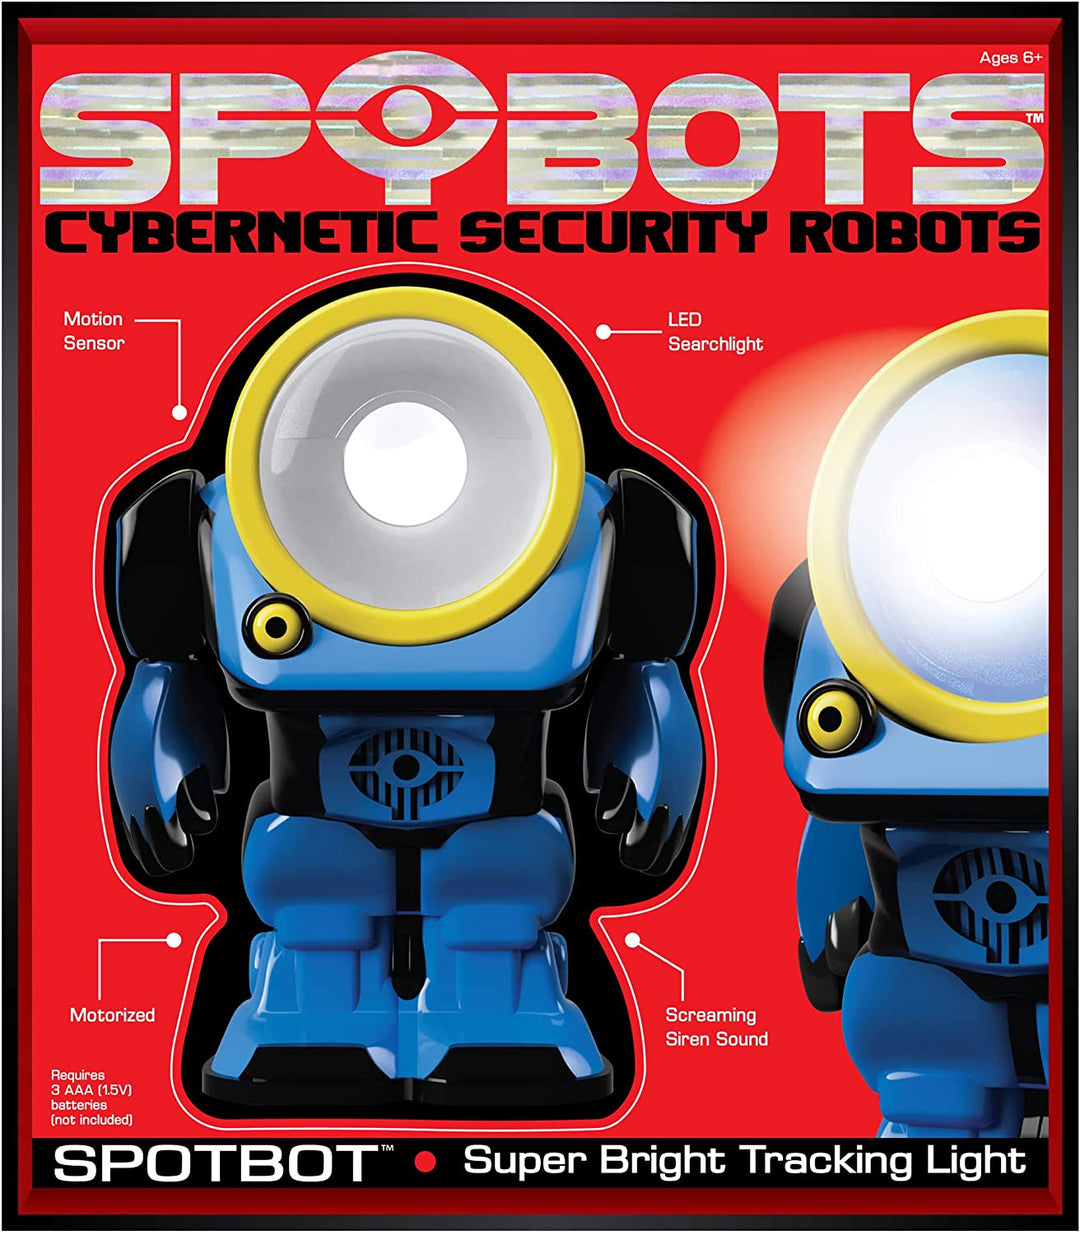 SpyBots SpotBot - security robot! LED serchlight. Fun Boys gadget toys